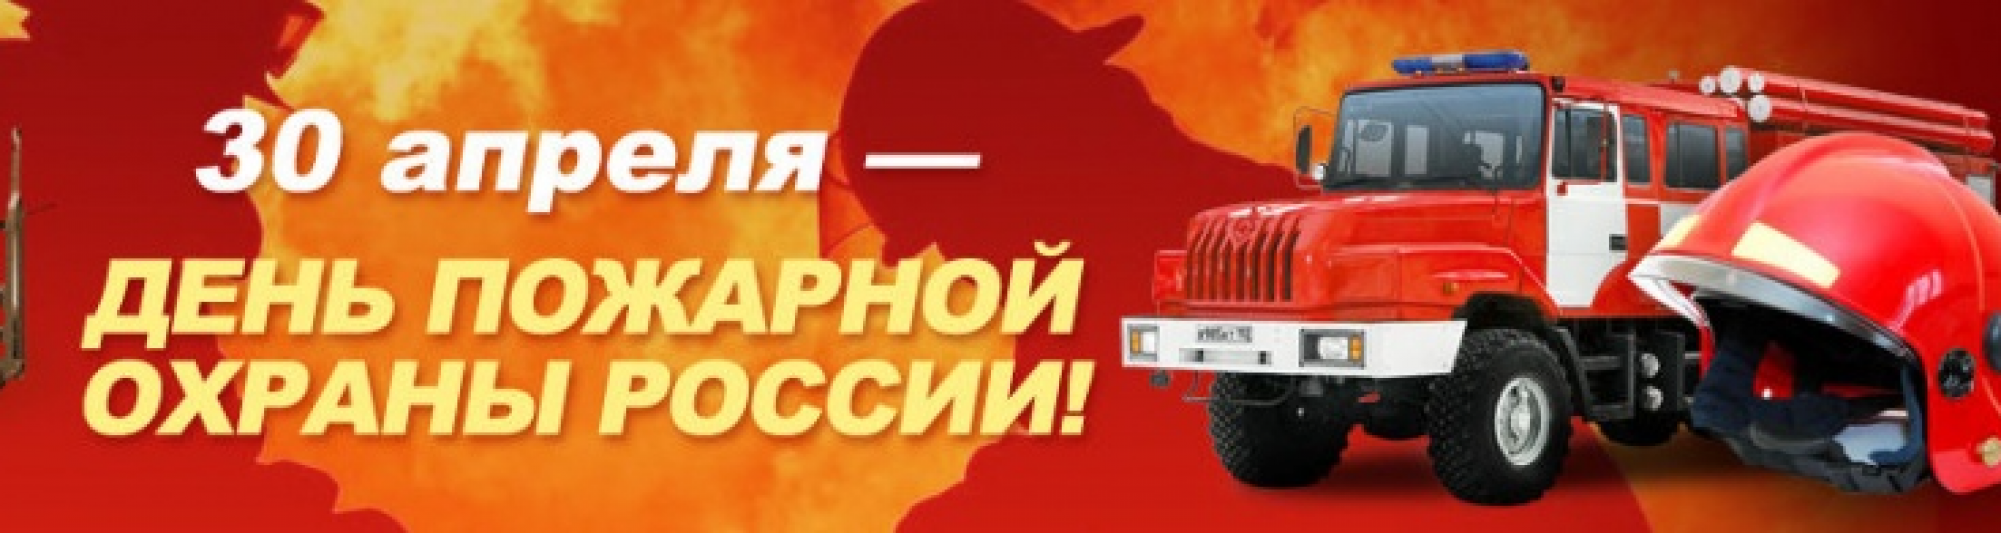 30 апреля 2019 г. 30 Апреля день пожарной охраны России. С днем пожарного. С праздником пожарной охраны. С днем пожарной охраны 30 апреля.